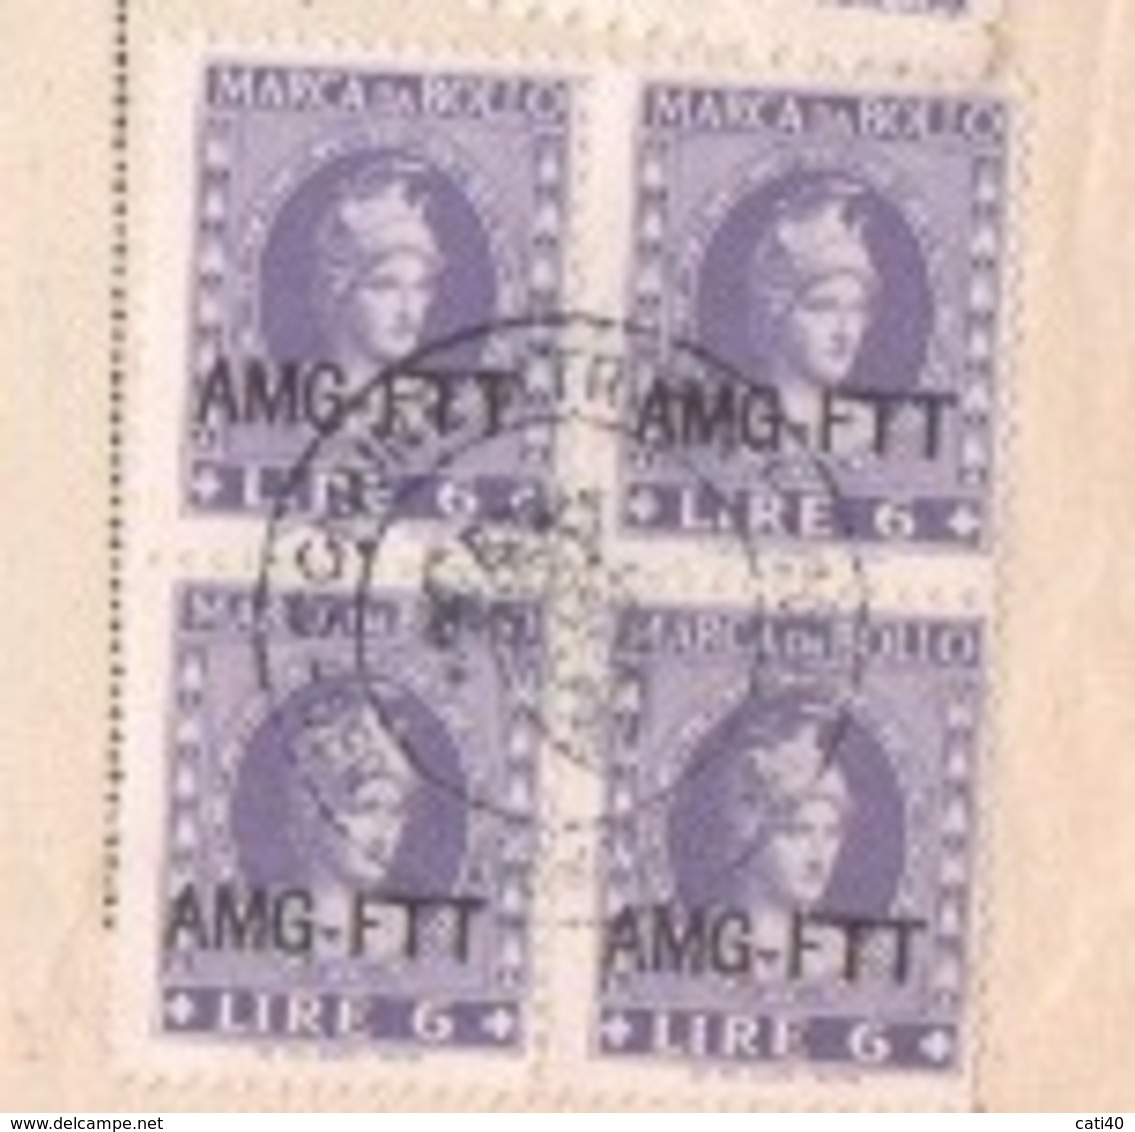 TRIESTE AMG FTT  9 OTTOBRE 1951  DOCUMENTO  ATTESTATO DEL COMUNE CON  MARCHE DA BOLLO E MARCA MUNICIPALE  FIRME E TIMBRI - Fiscali